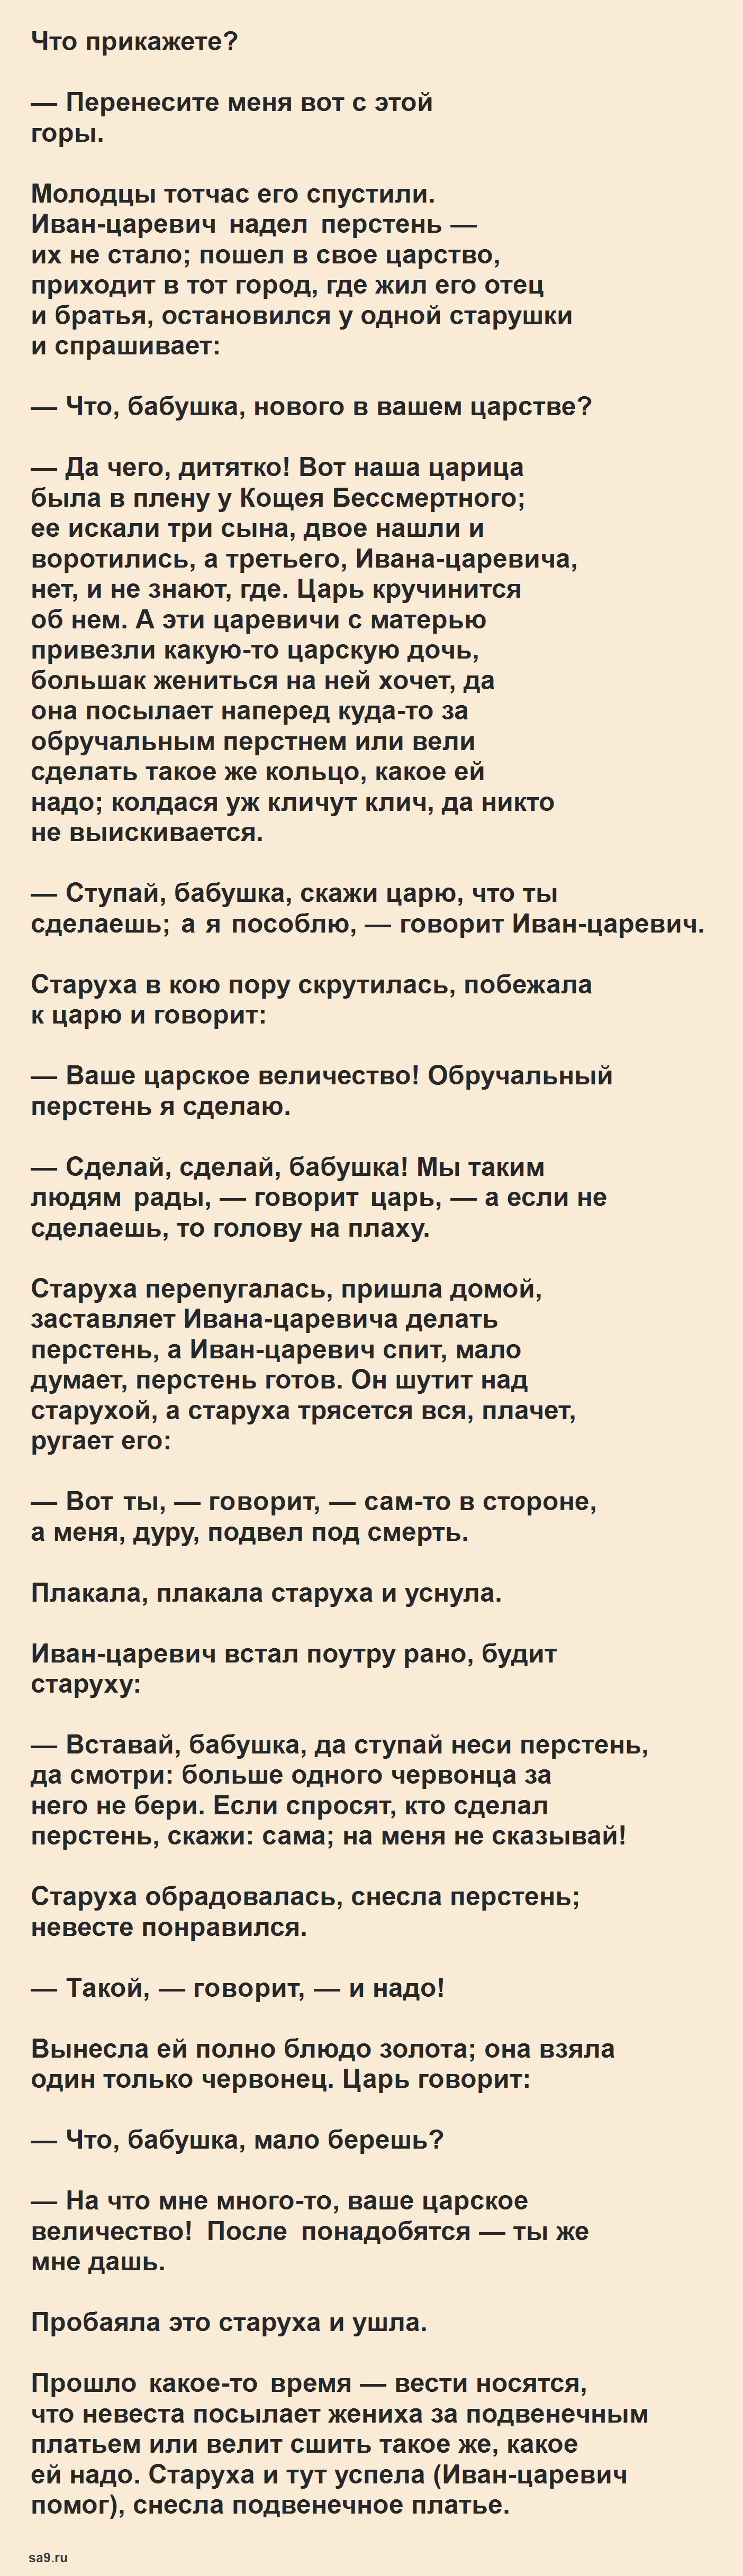 Кощей Бессмертный - русская народная сказка